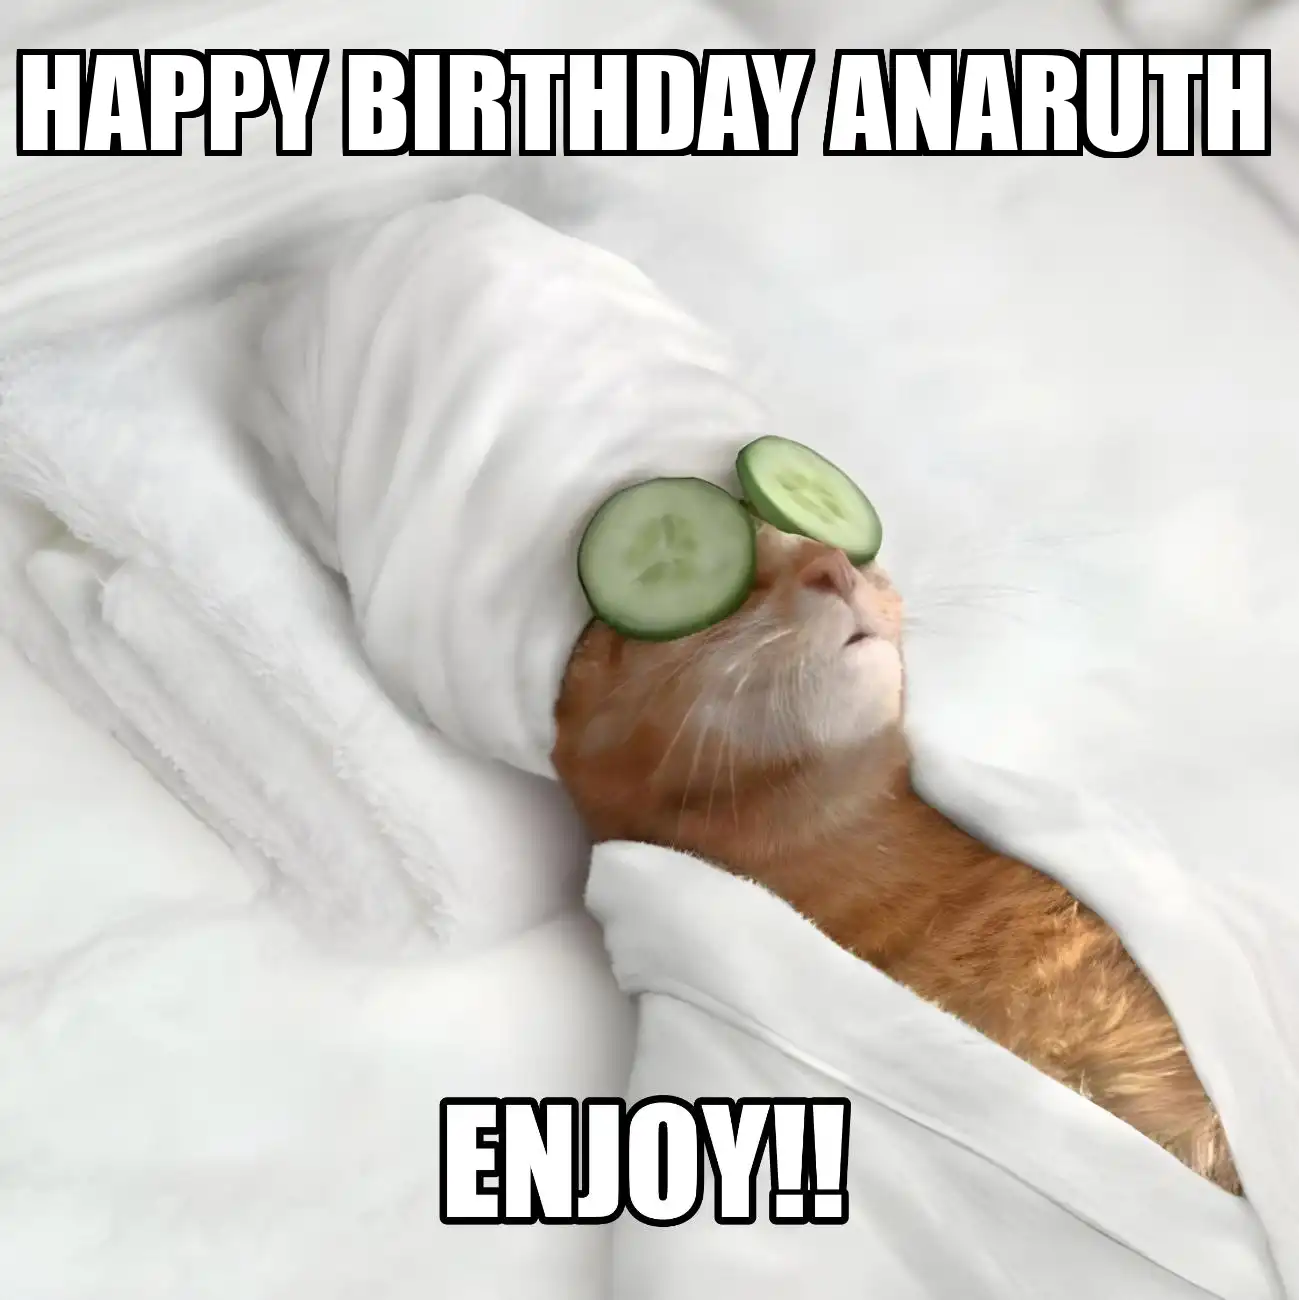 Happy Birthday Anaruth Enjoy Cat Meme